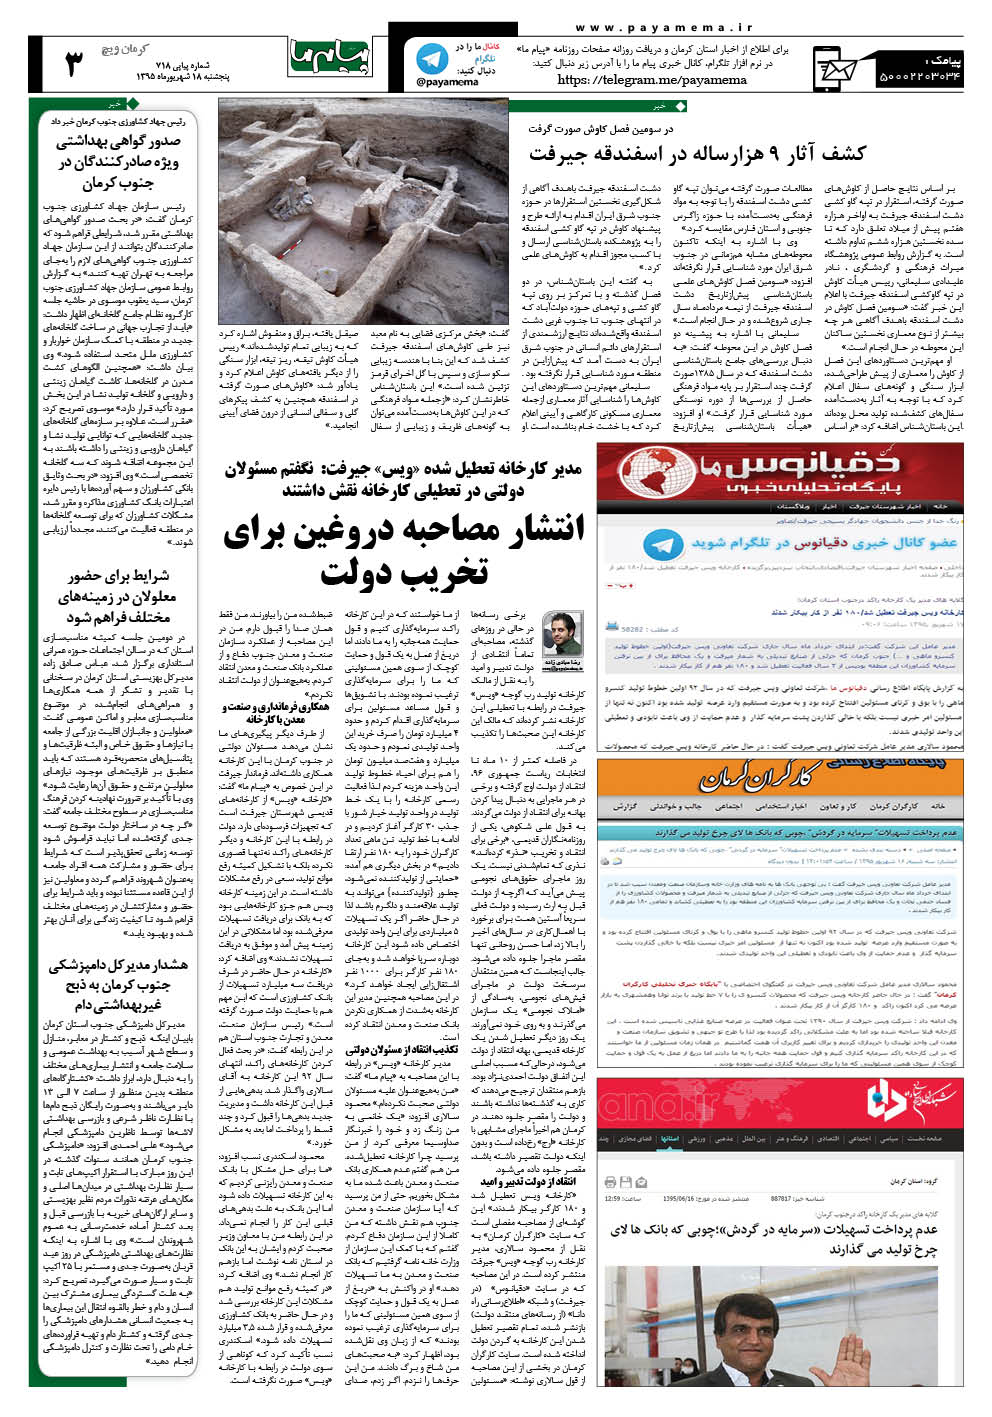 صفحه کرمان ویج شماره 718 روزنامه پیام ما